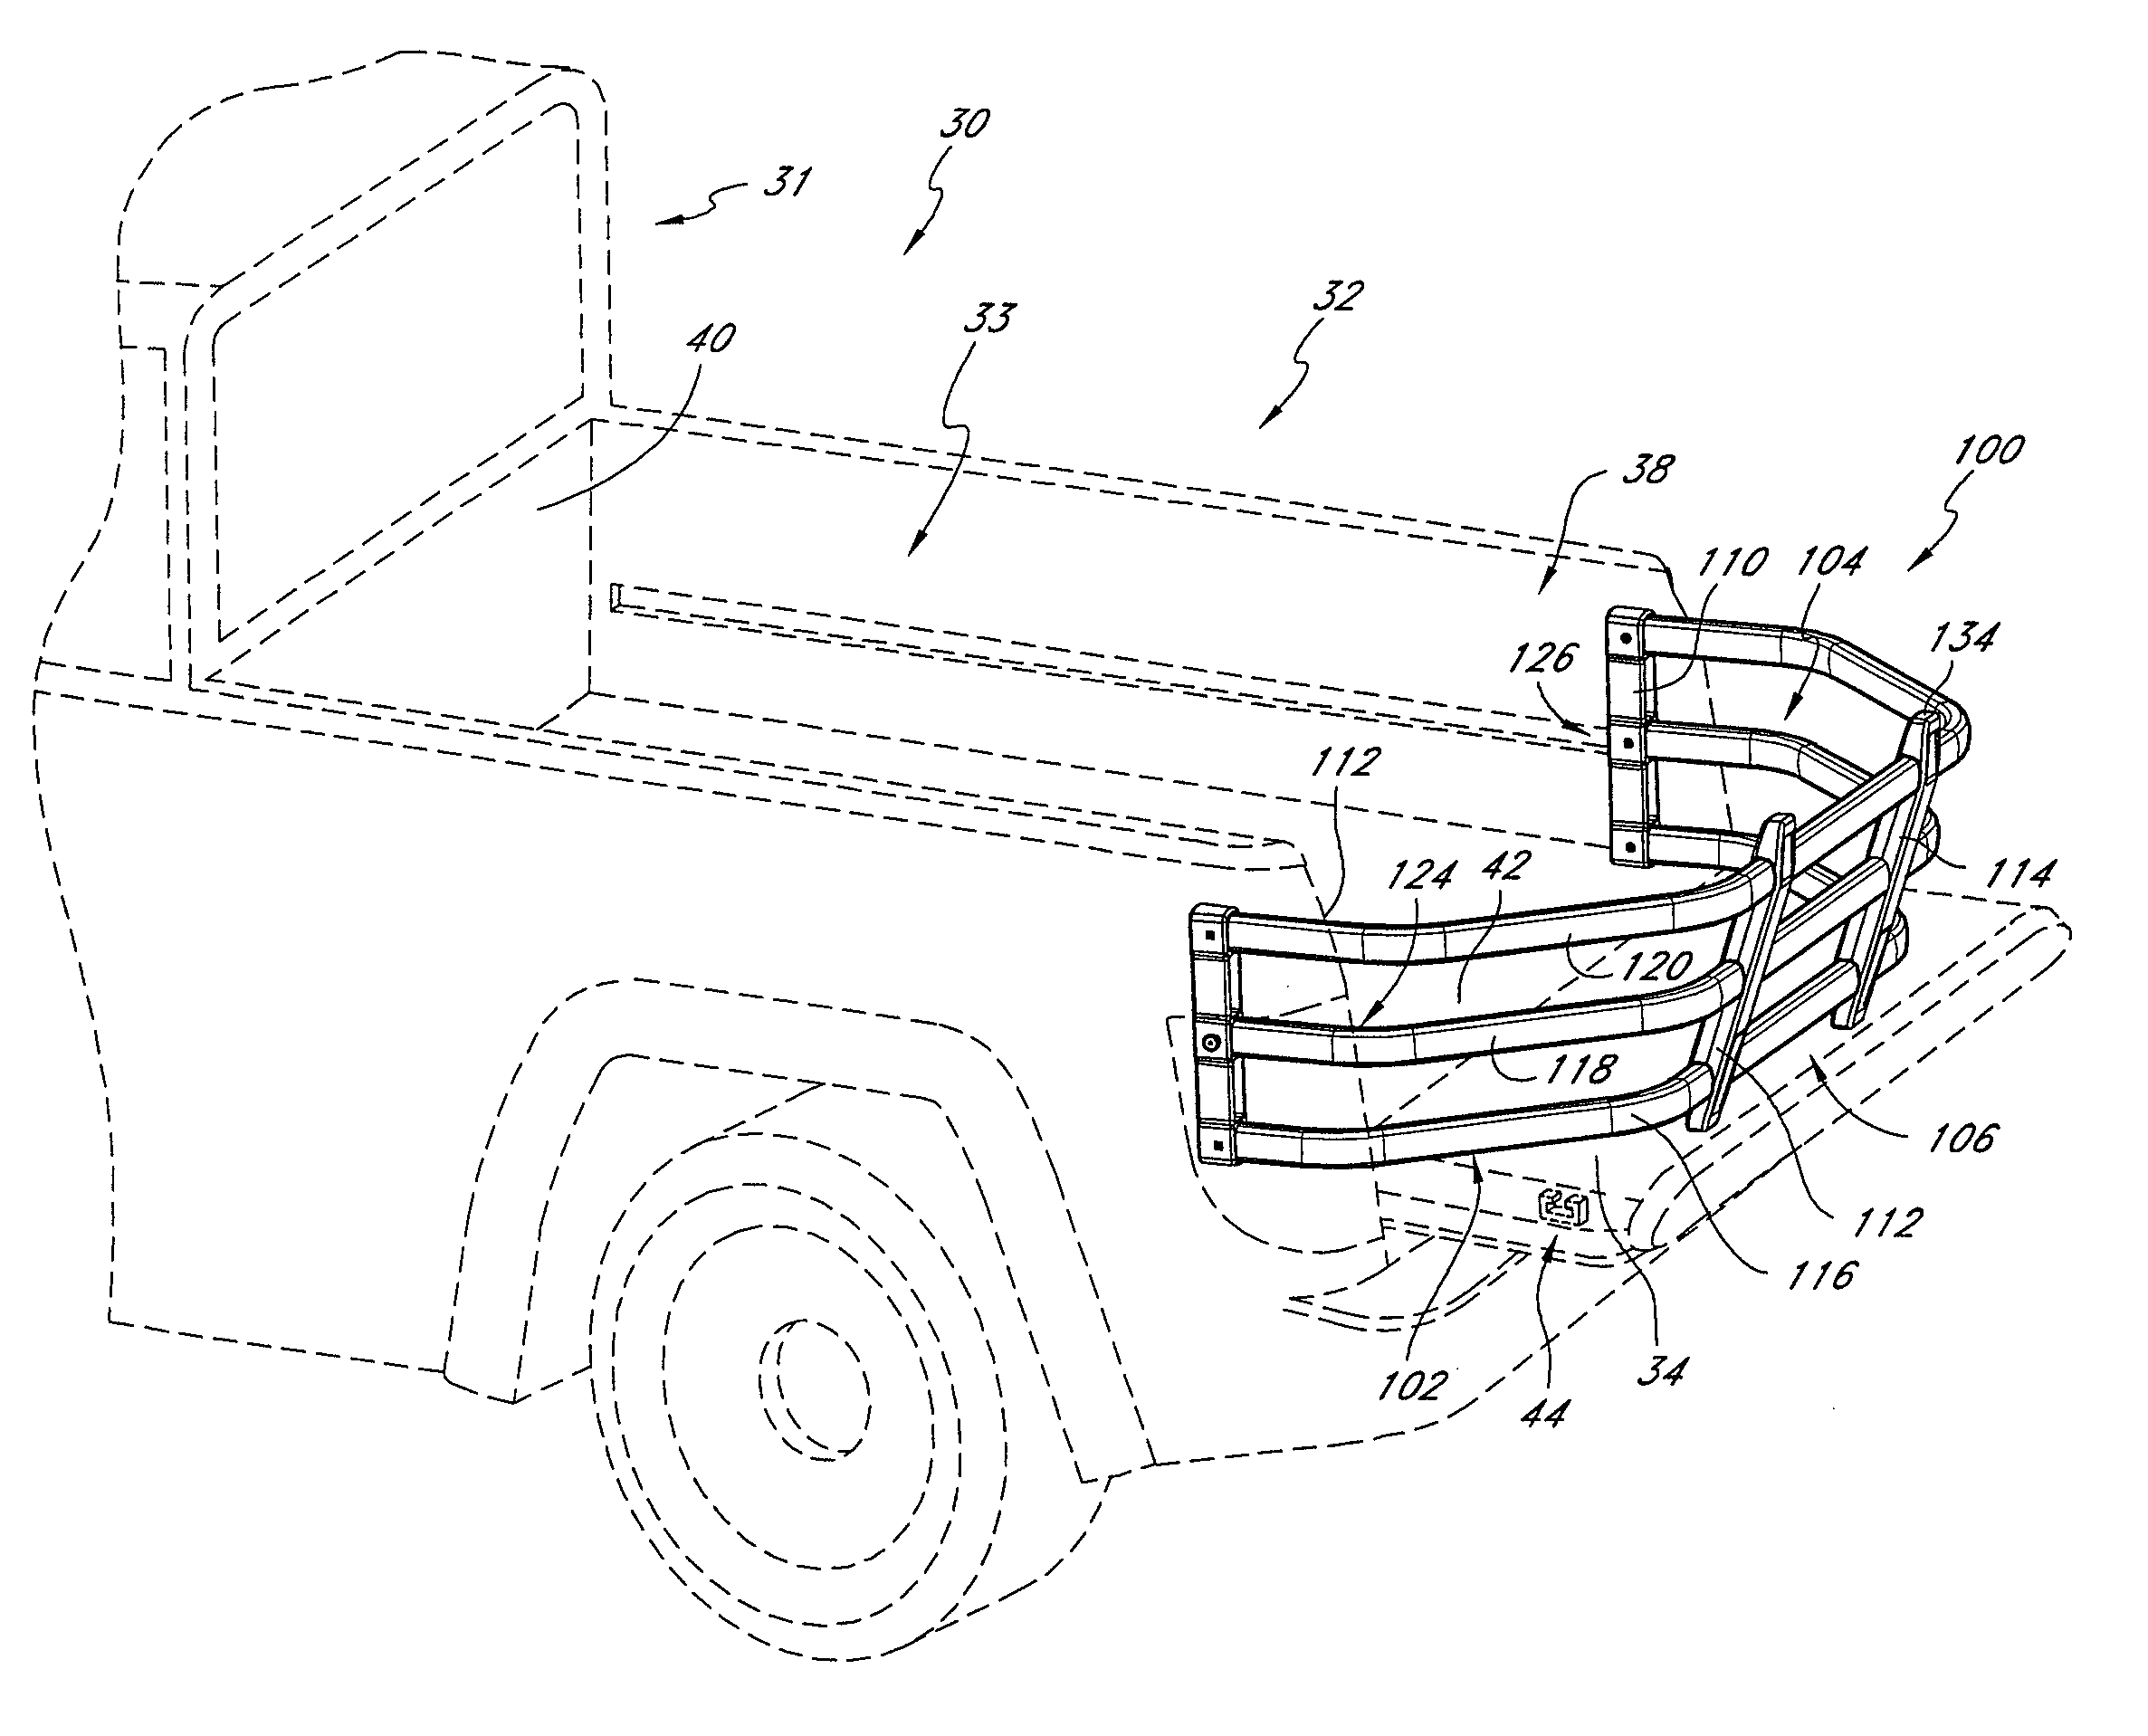 Vehicle cargo tailgate enclosure